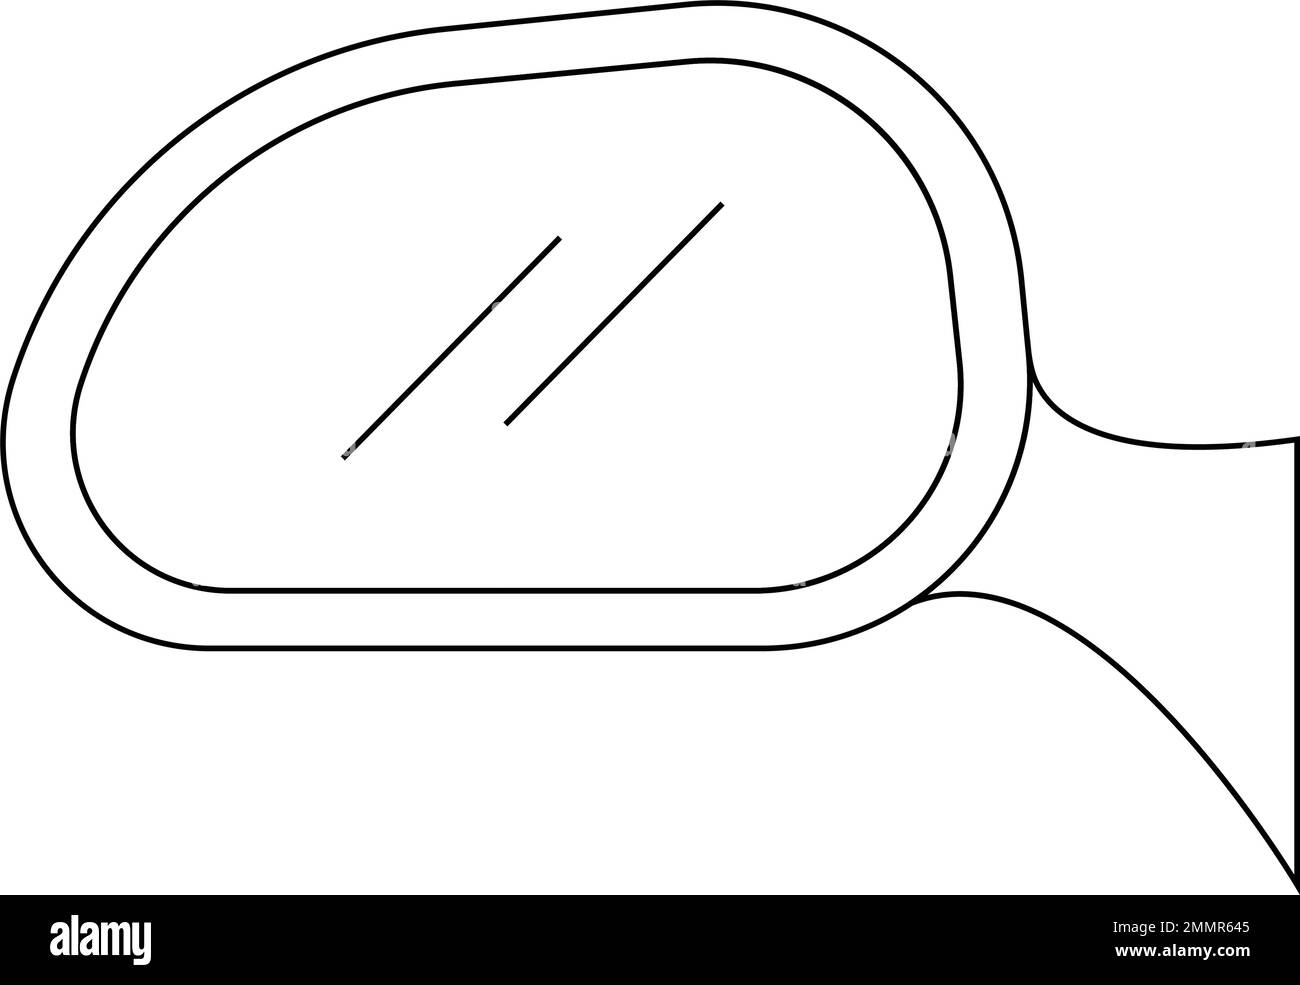 icono de espejo de coche retrovisor en marco negro aislado en diseño de ilustración de fondo blanco Ilustración del Vector